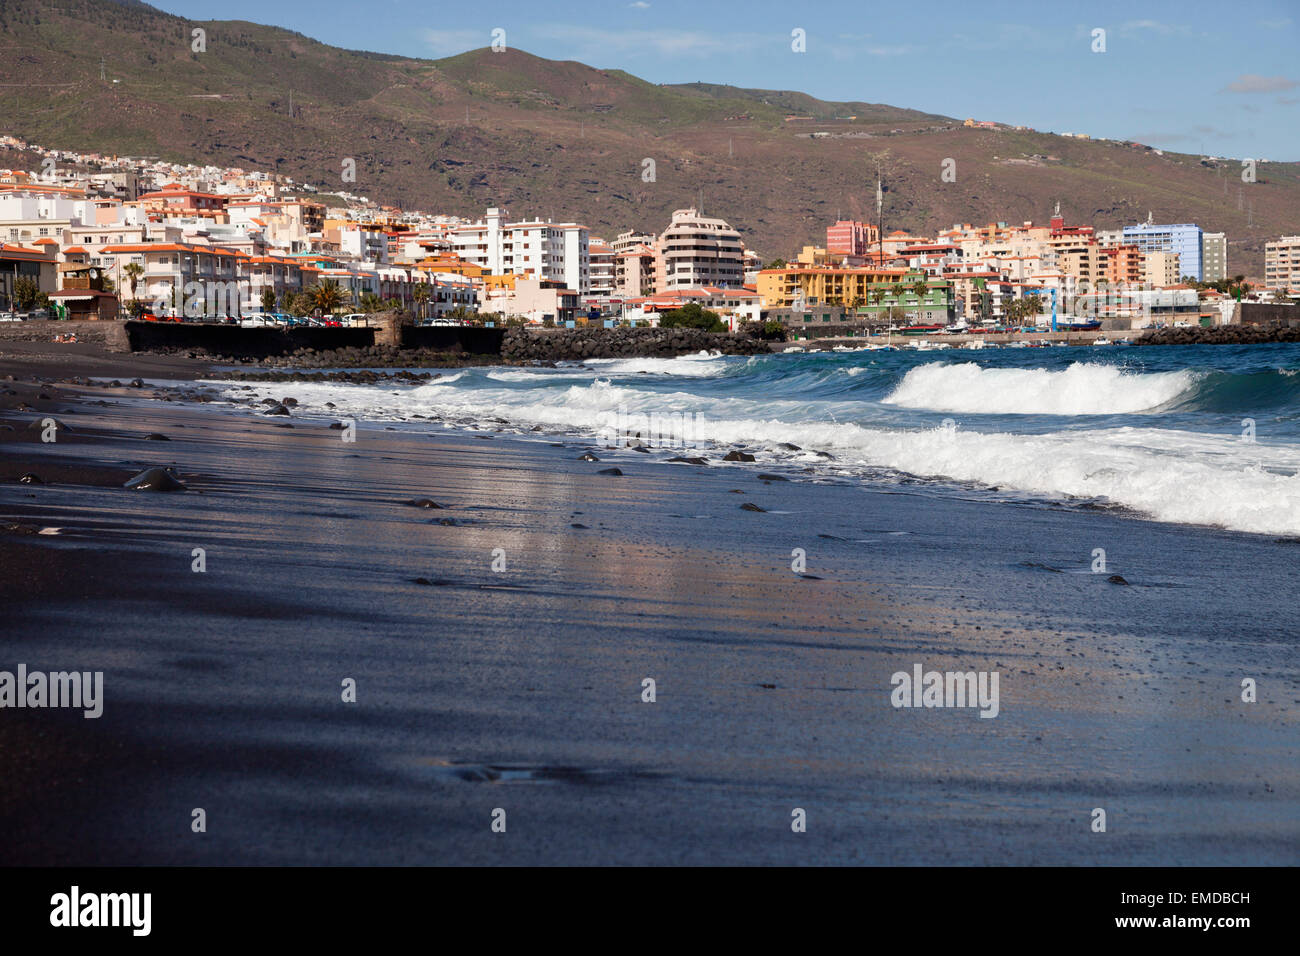 La plage de sable noir dans la région de candelaria, Tenerife, Canaries, Espagne, Europe Banque D'Images